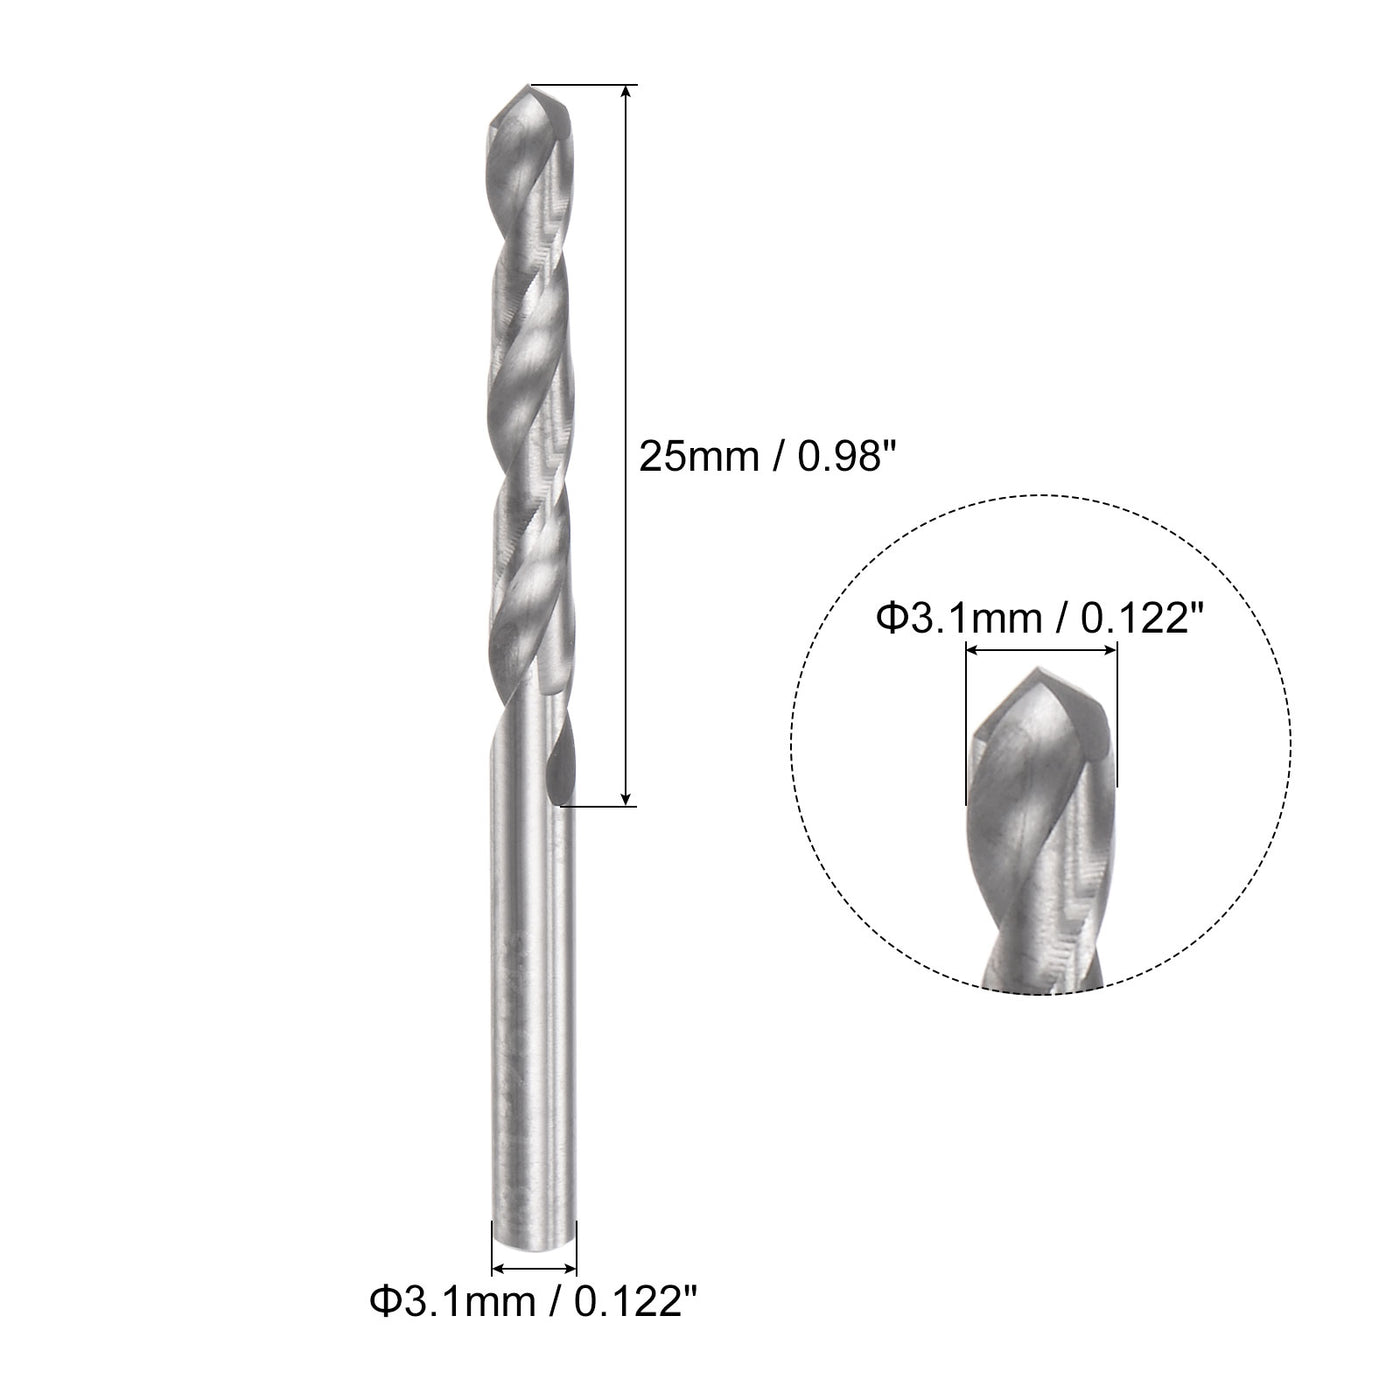 uxcell Uxcell 3.1mm C2/K20 Tungsten Carbide Straight Shank Spiral Flutes Twist Drill Bit